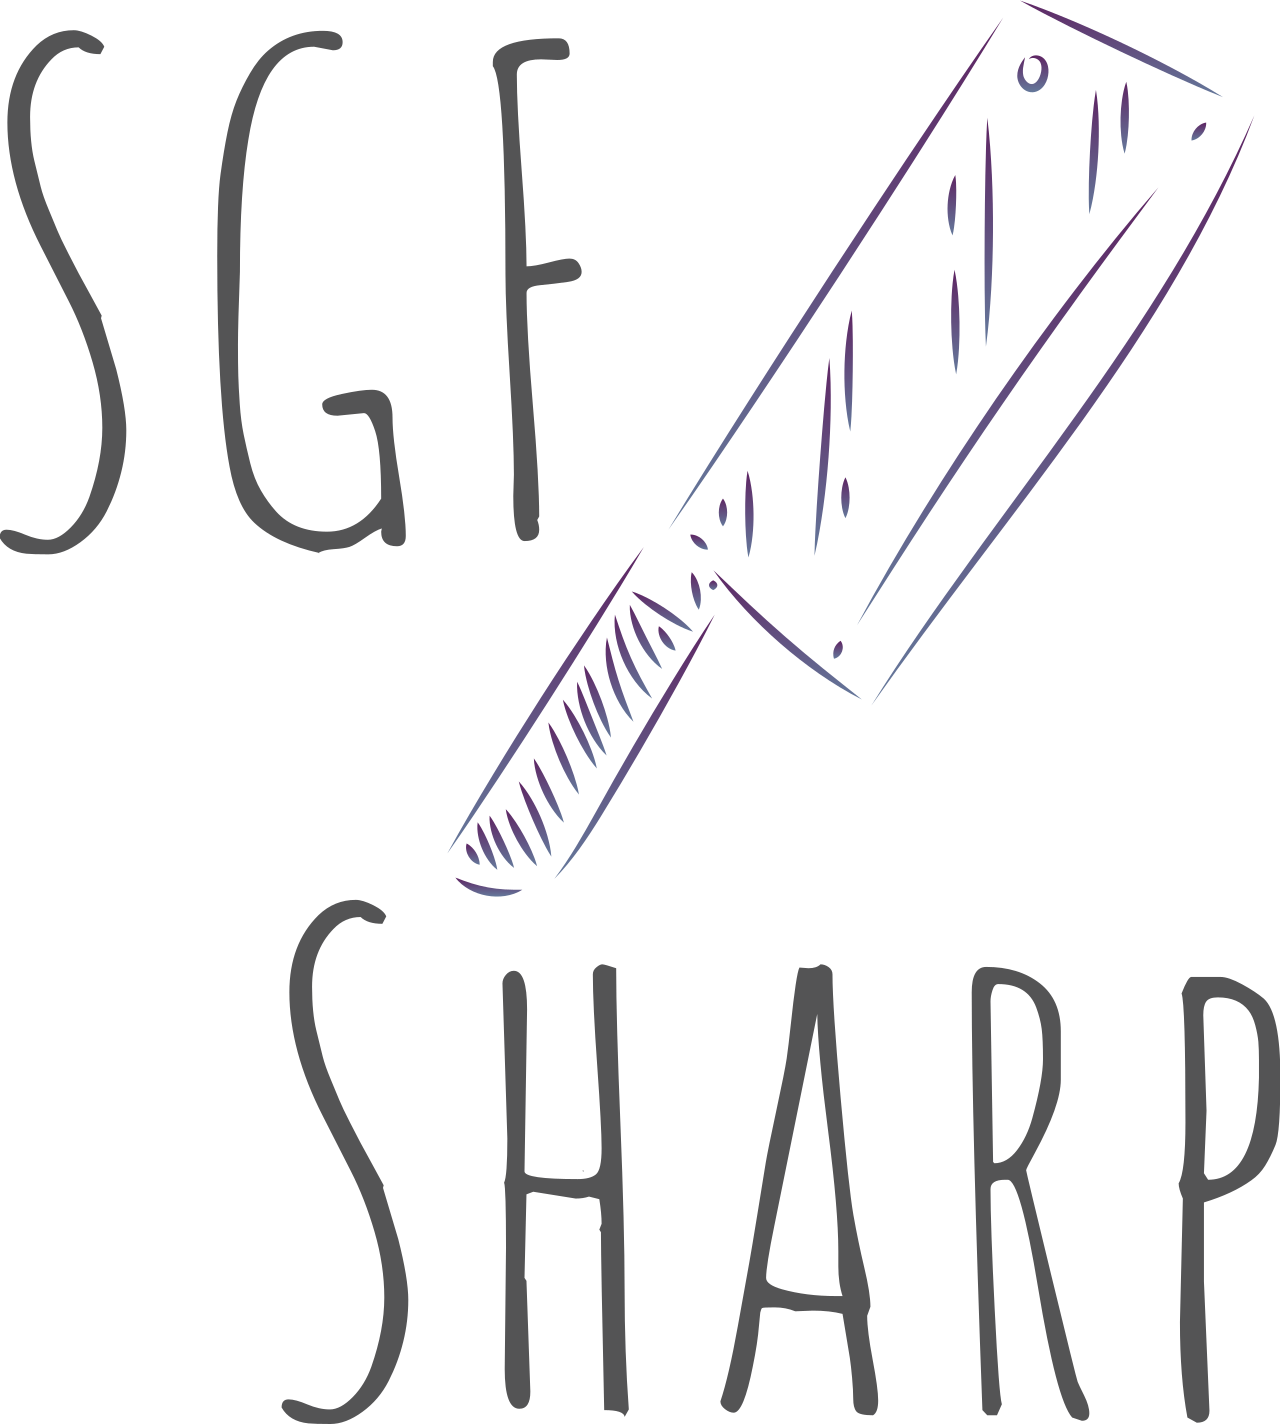 SGF        
Sharp's logo